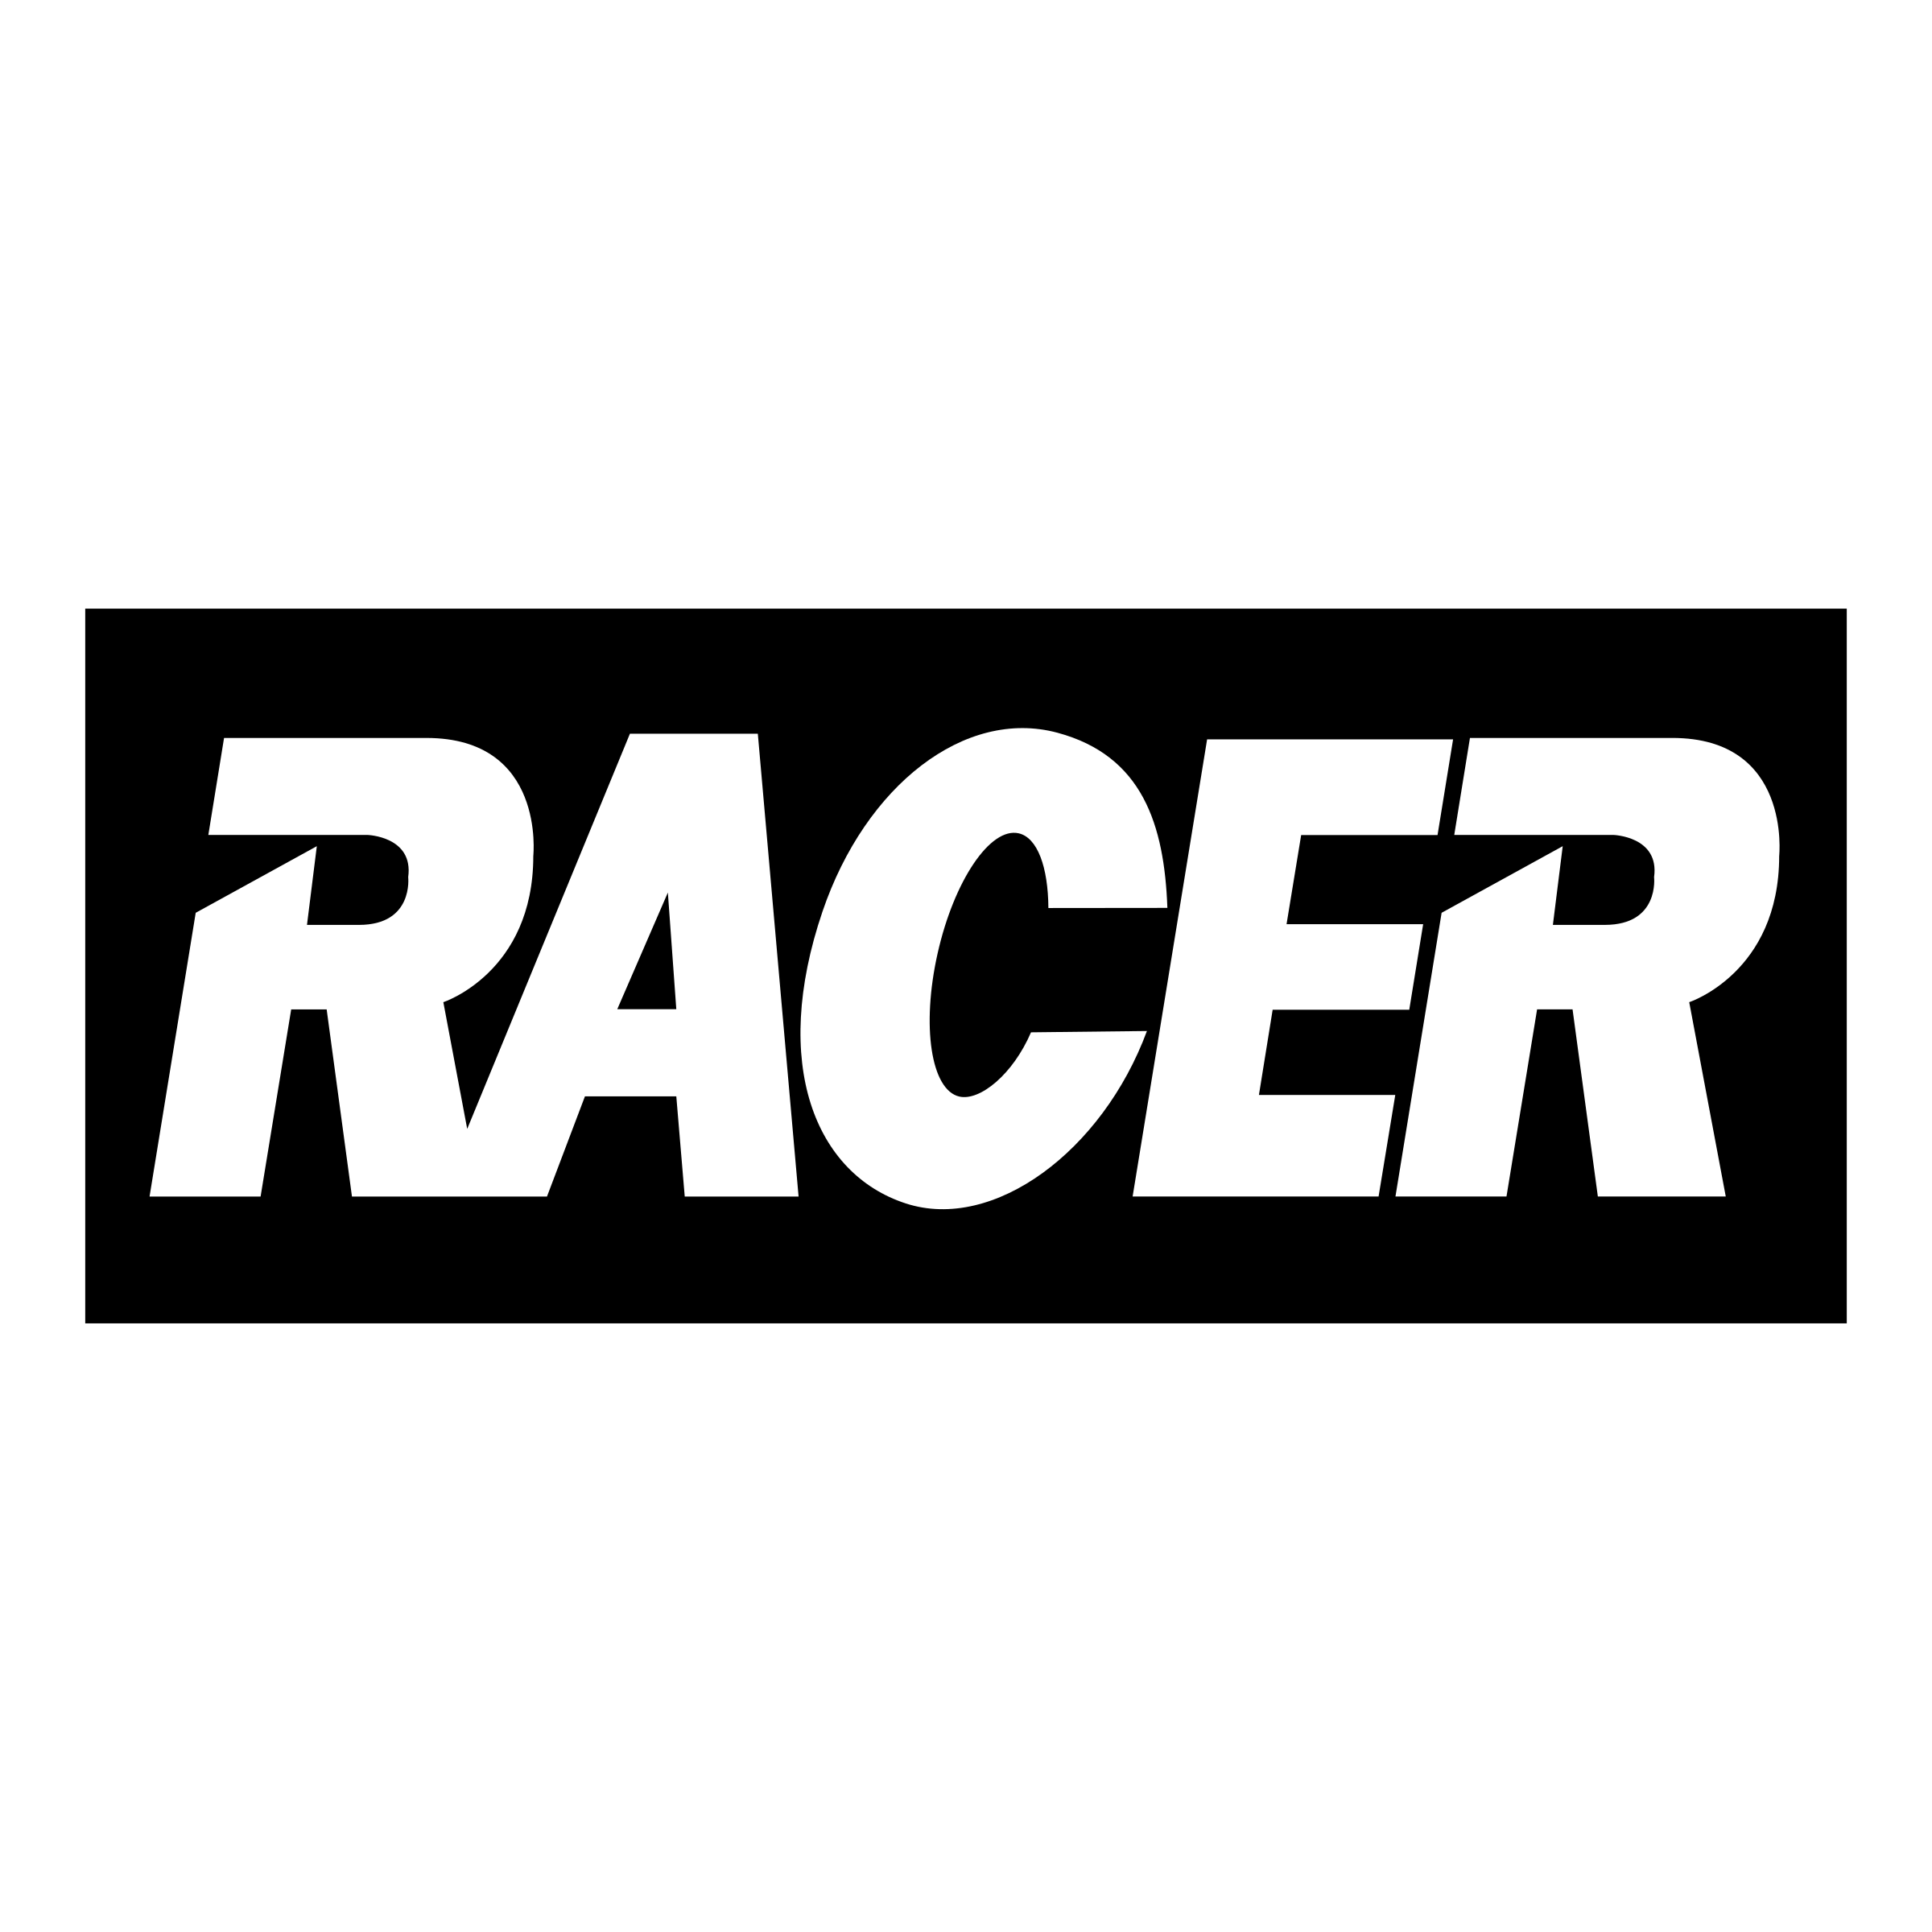 Racer Logo - Racer Logo PNG Transparent & SVG Vector